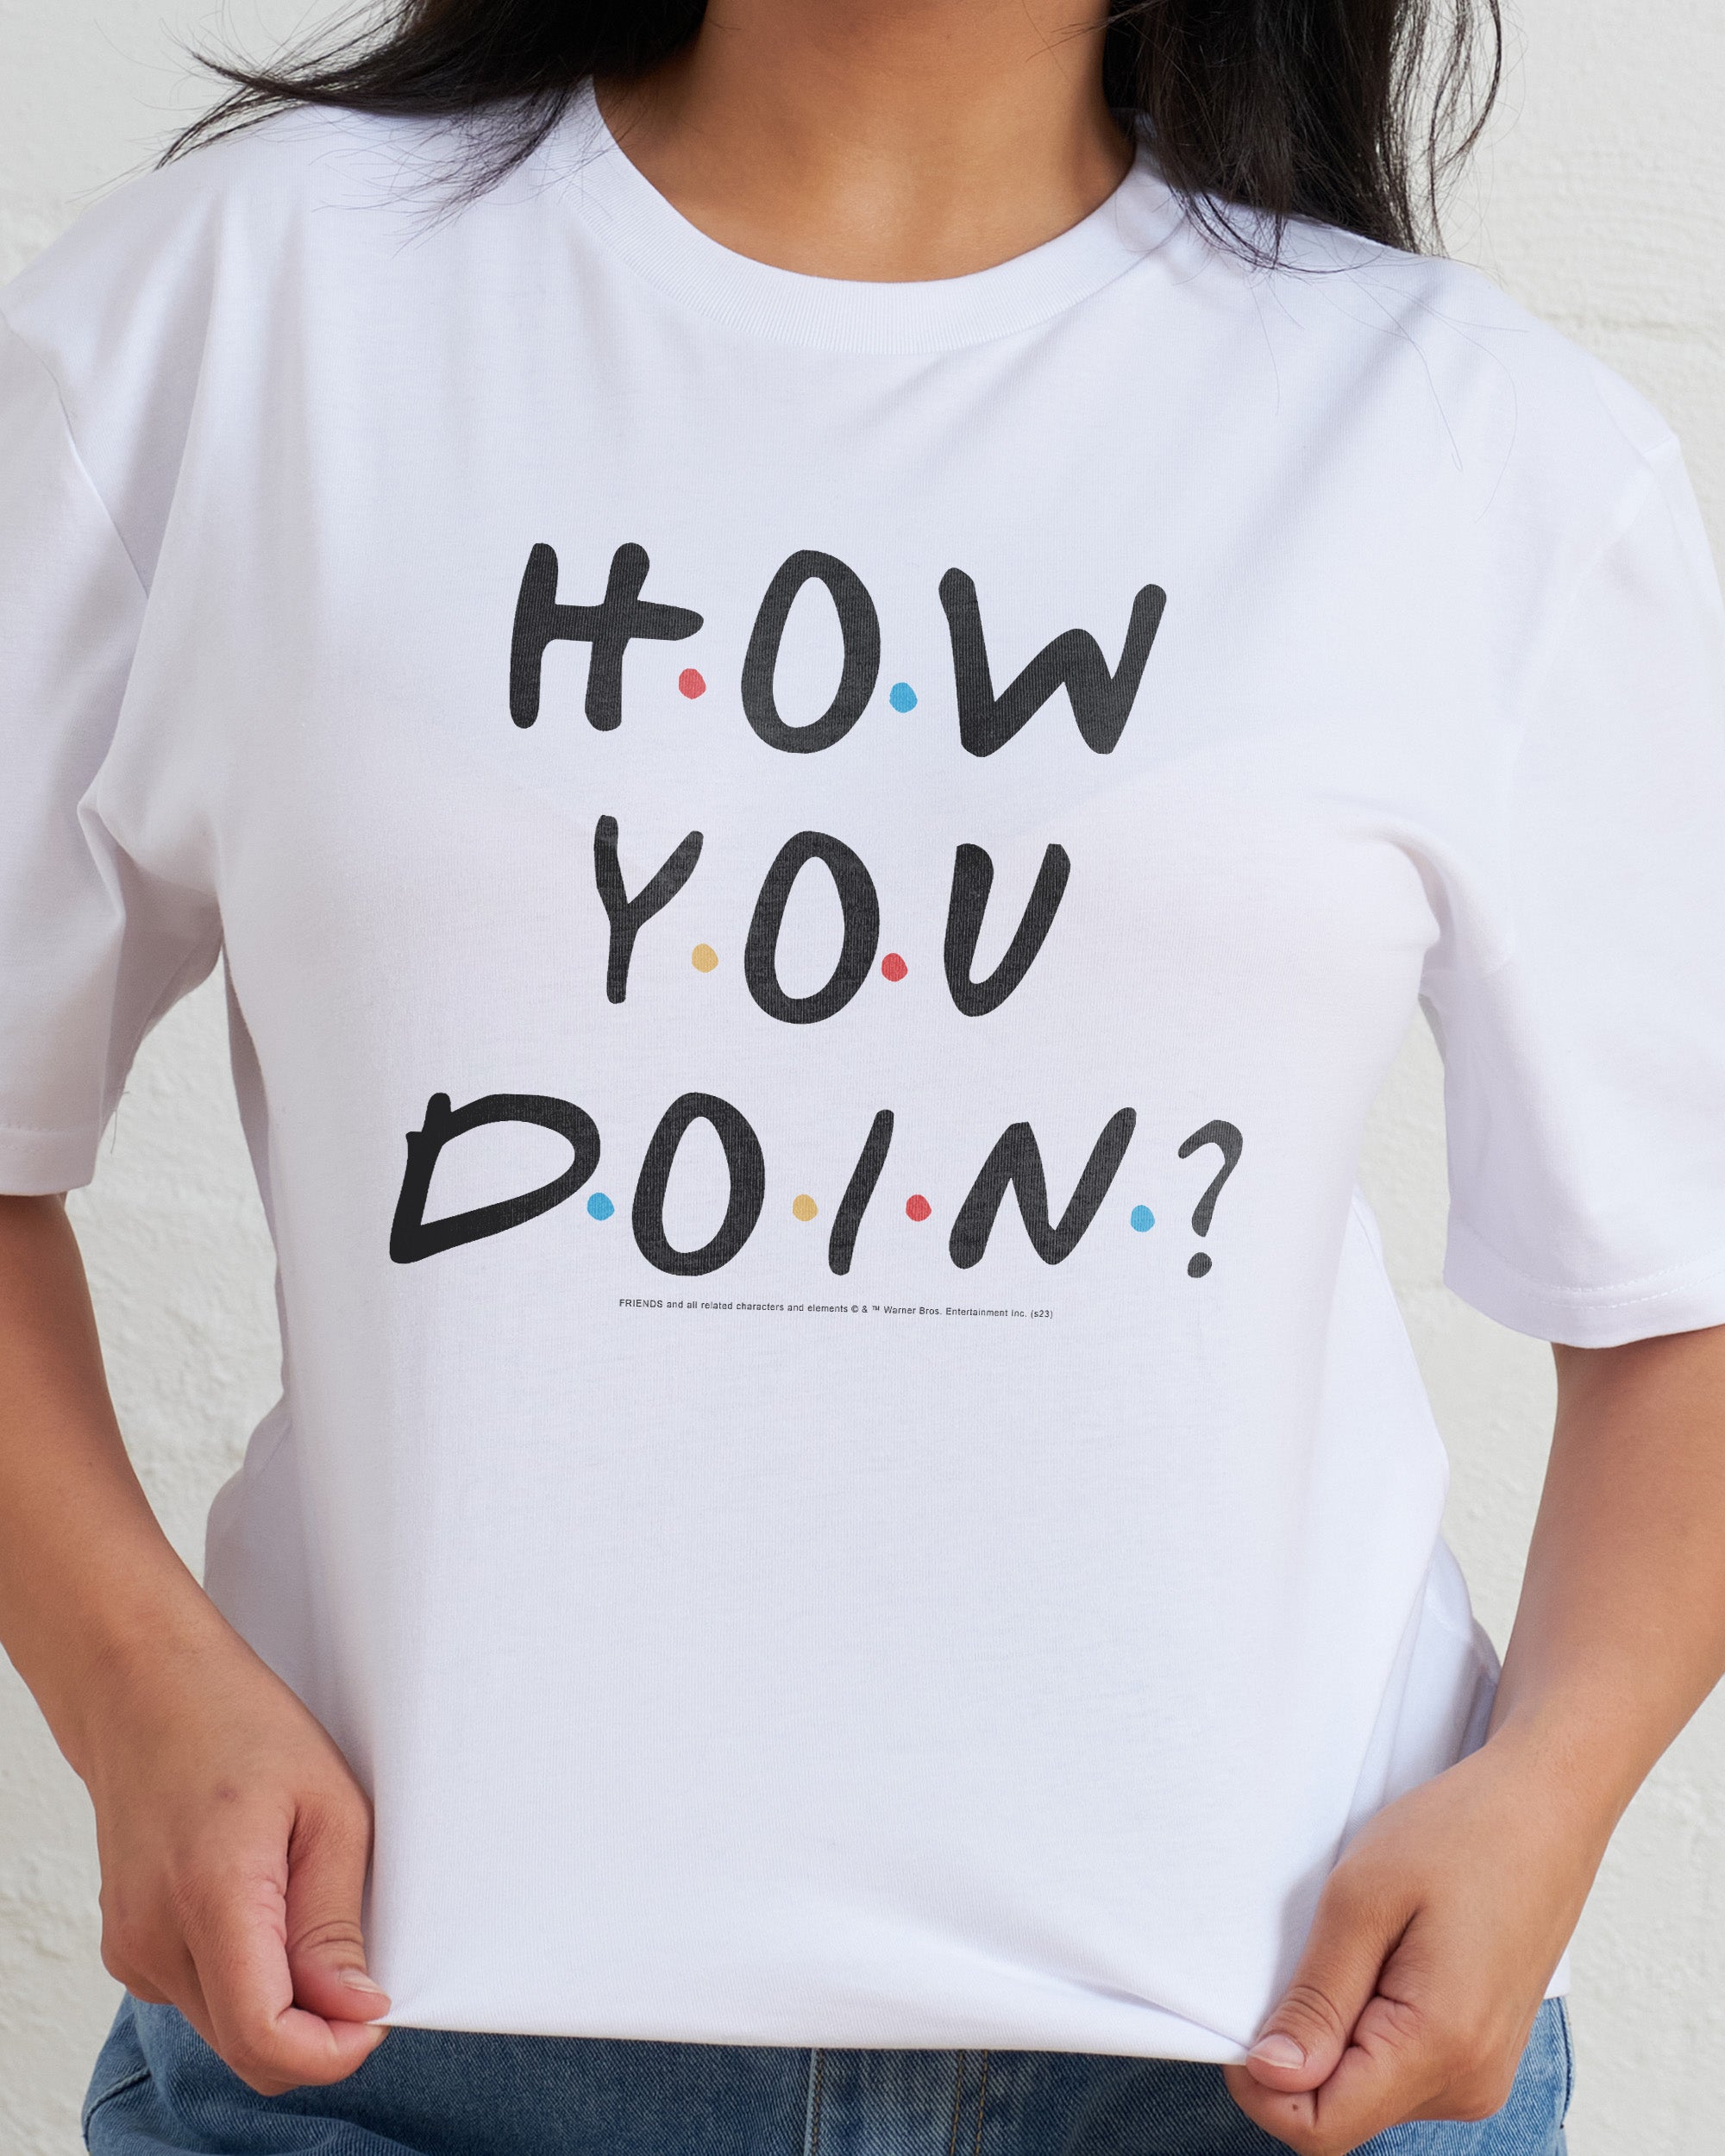 How You Doin? T-Shirt